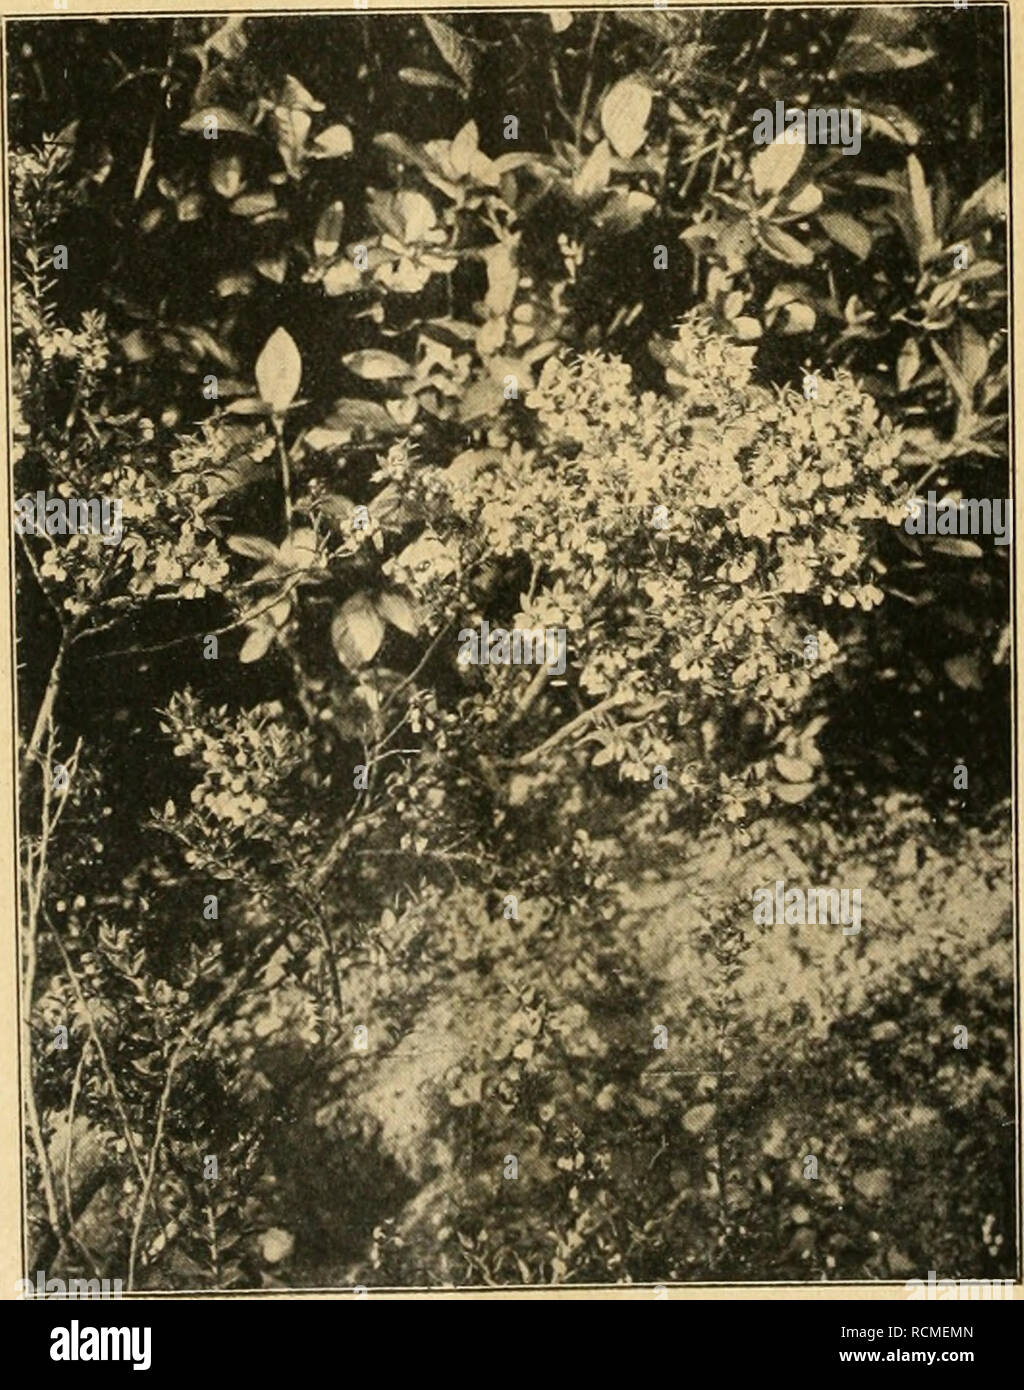 . Die Gartenwelt. Gardening. Ledum Lyoni, unten Pernettya mucronata.. podium vergleichen. Im März, April zieren wadisweiße, mai- blumenartige Blütenglöckchen die Pflanze. Die weißen Blüt- chen kommen durch das tiefe, satte Grün der dicht be- schuppten Zweige recht aus- drucksvoll zur Geltung. Unser Lichtbild zeigt ein junges Pflänzchen. Menziesia empetri/olia, ein niederliegendes, kaum 20 cm hohes Sträuchlein, ist zur Blüte- zeit im Mai mit seinen rot- purpurnen, in doldentraubiger Anordnung stehenden, glocki- gen Blütchen für halbschattige bis sonnigere Stellen aufs wärmste zu empfehlen. Wenn Stock Photo